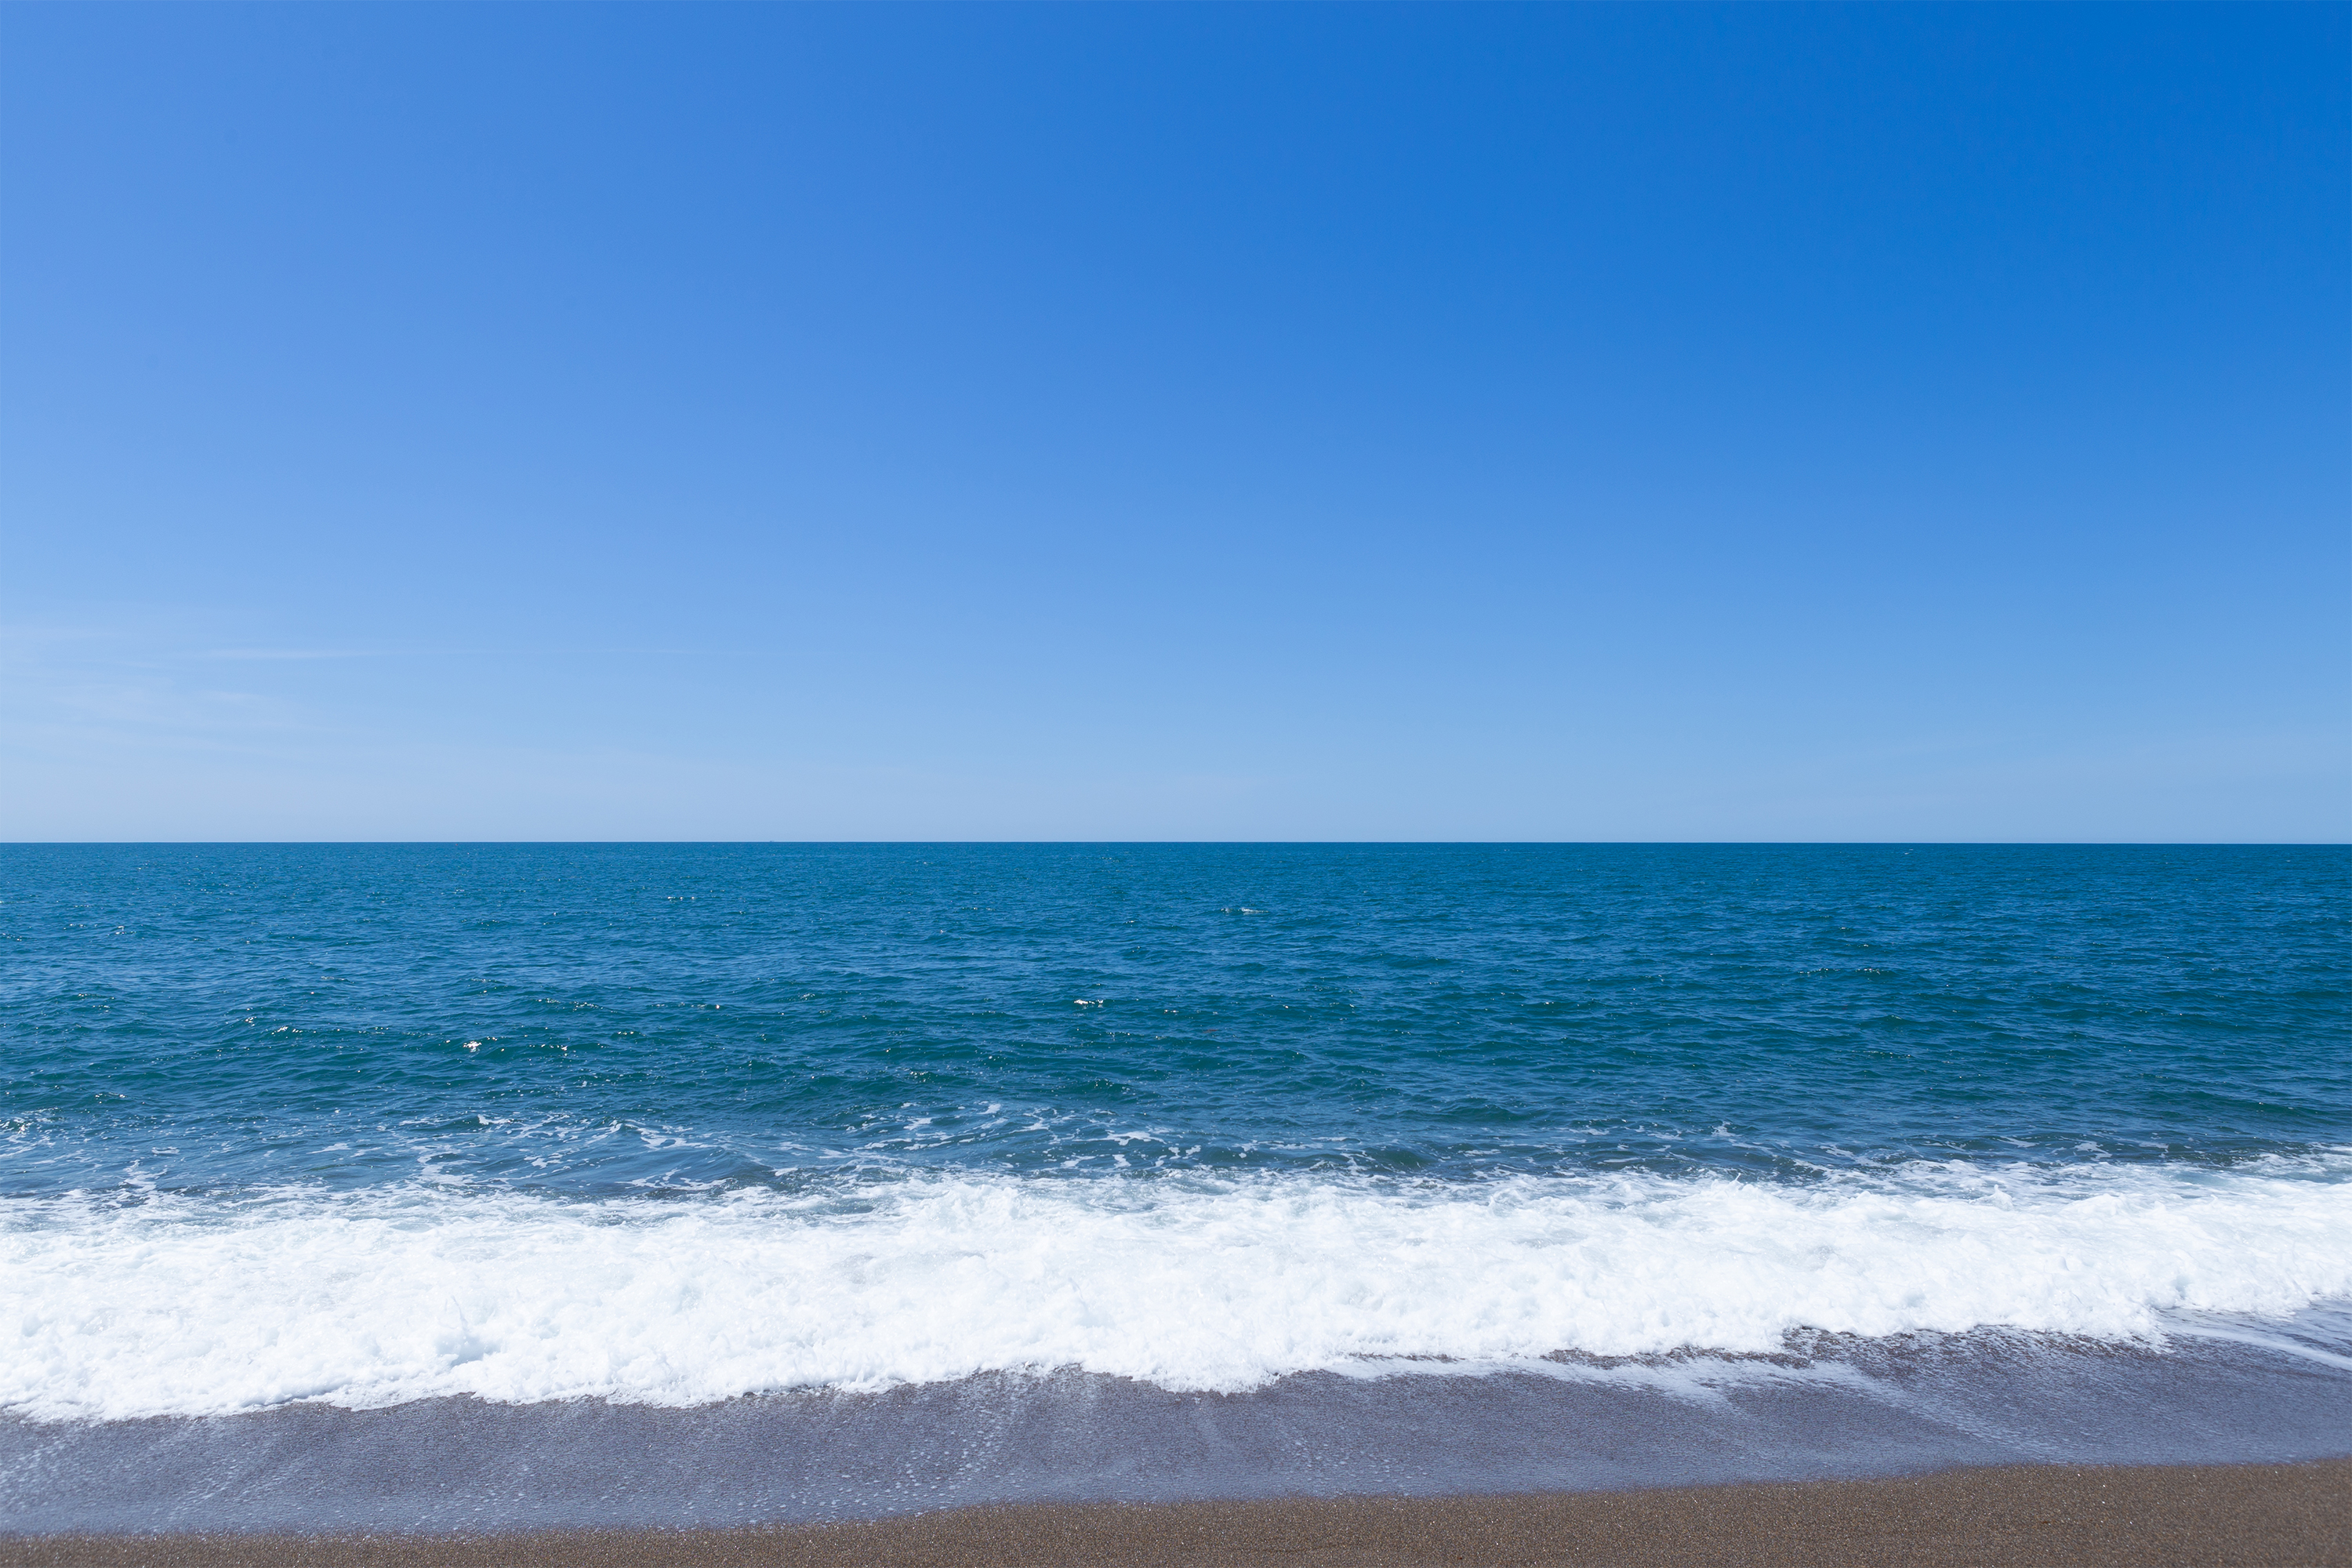 海 日本海 のさざ波 無料の高画質フリー写真素材 イメージズラボ